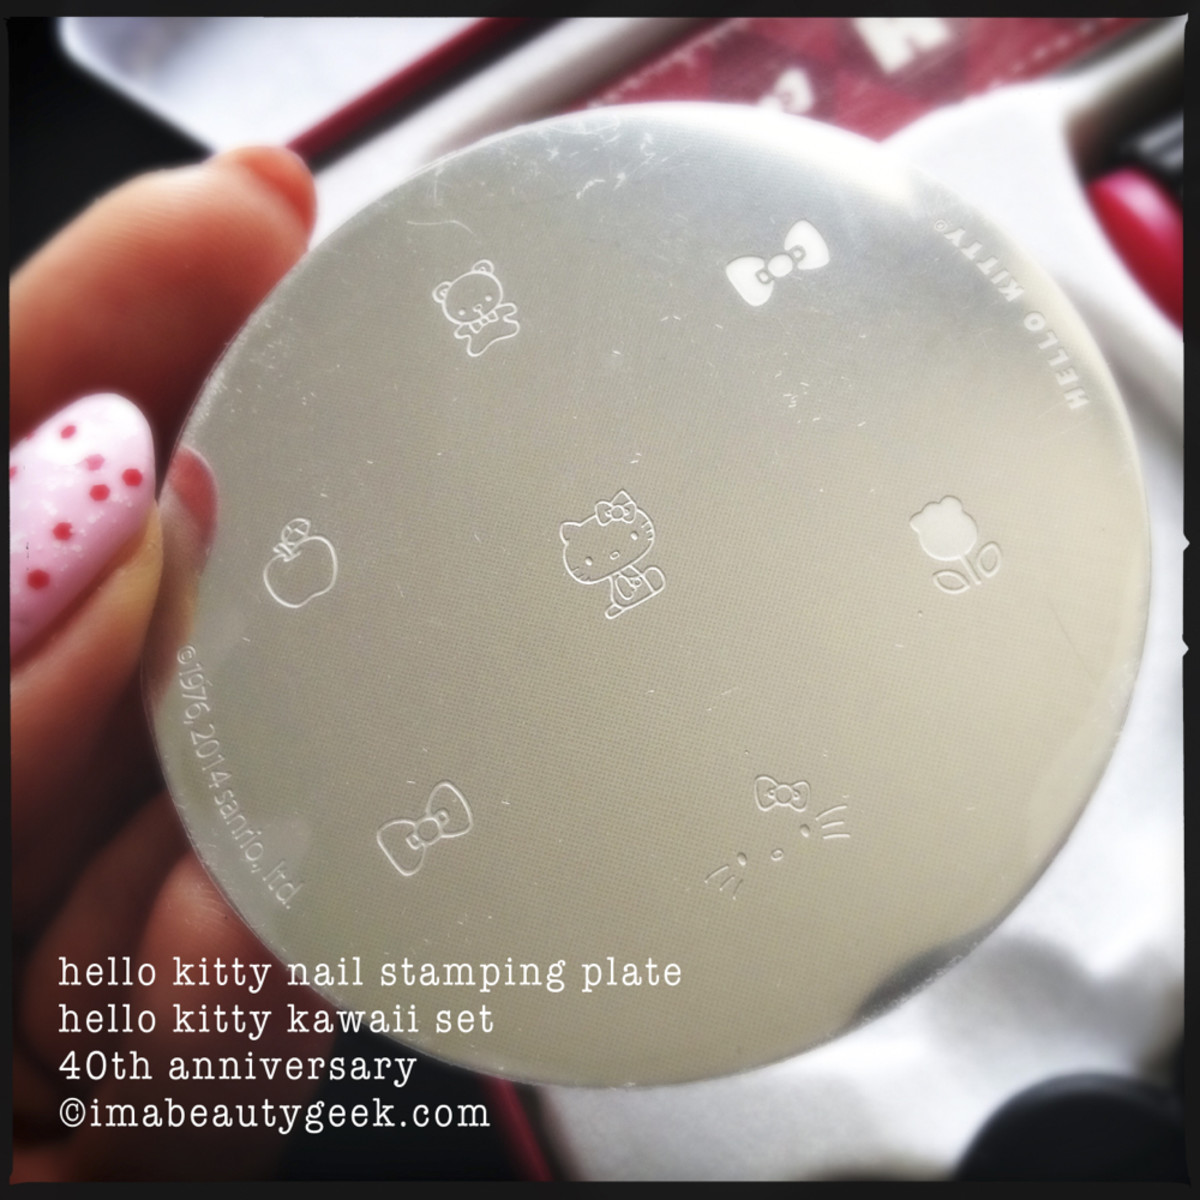 Sanrio Nail Stamping Plate-NO.29